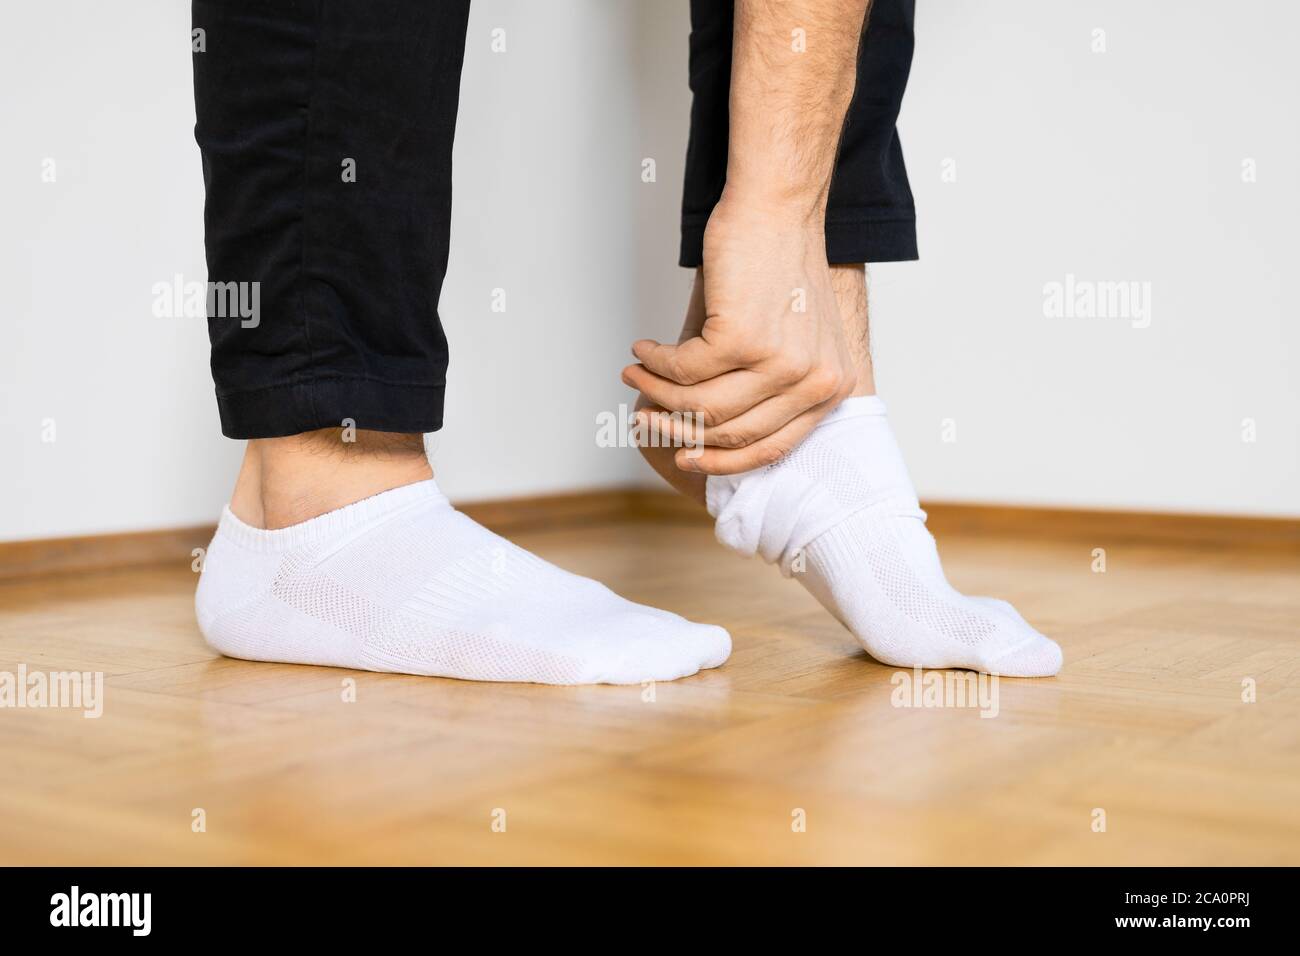 pieds humains mettant sur des chaussettes blanches de cheville en se tenant à la main sur le plancher en bois Banque D'Images